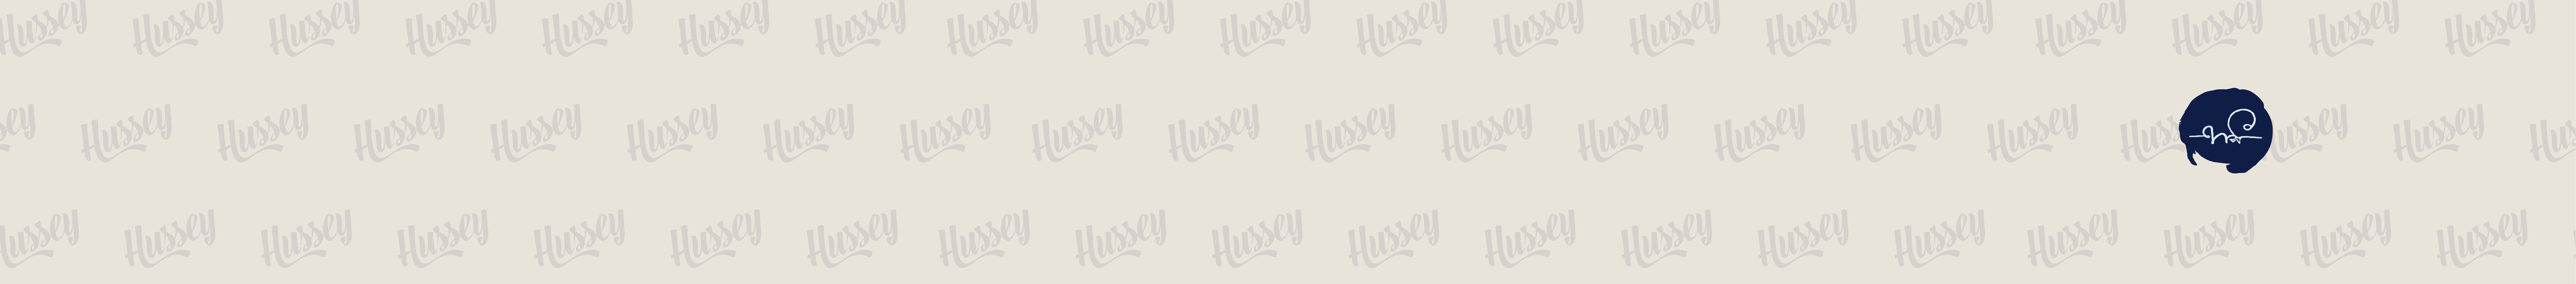 Käyttäjän HUSSEY 380 profiilibanneri